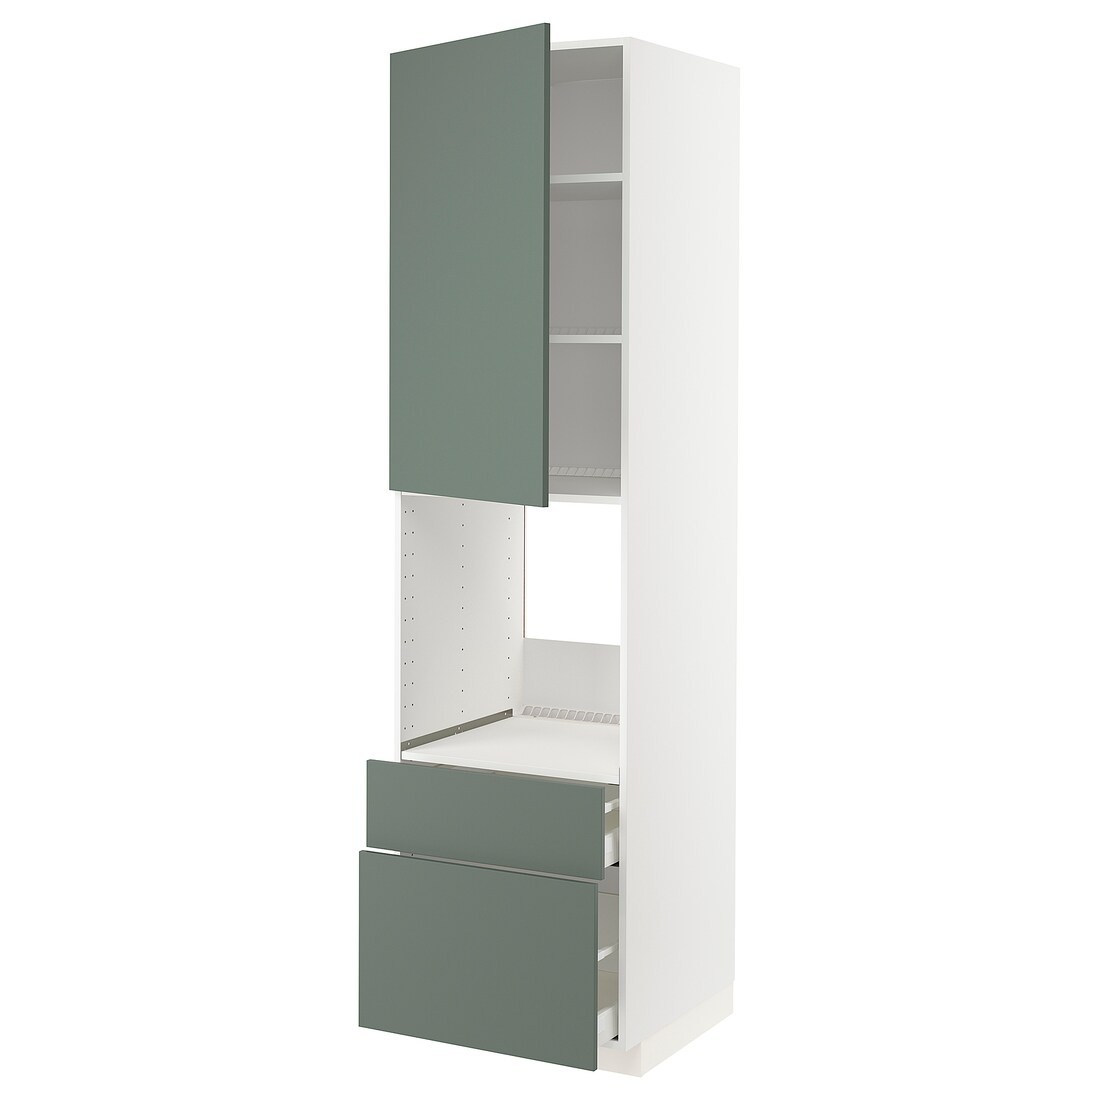 METOD МЕТОД / MAXIMERA МАКСИМЕРА Высокий шкаф для духовки с дверцей / ящиками, белый / Bodarp серо-зеленый, 60x60x220 см